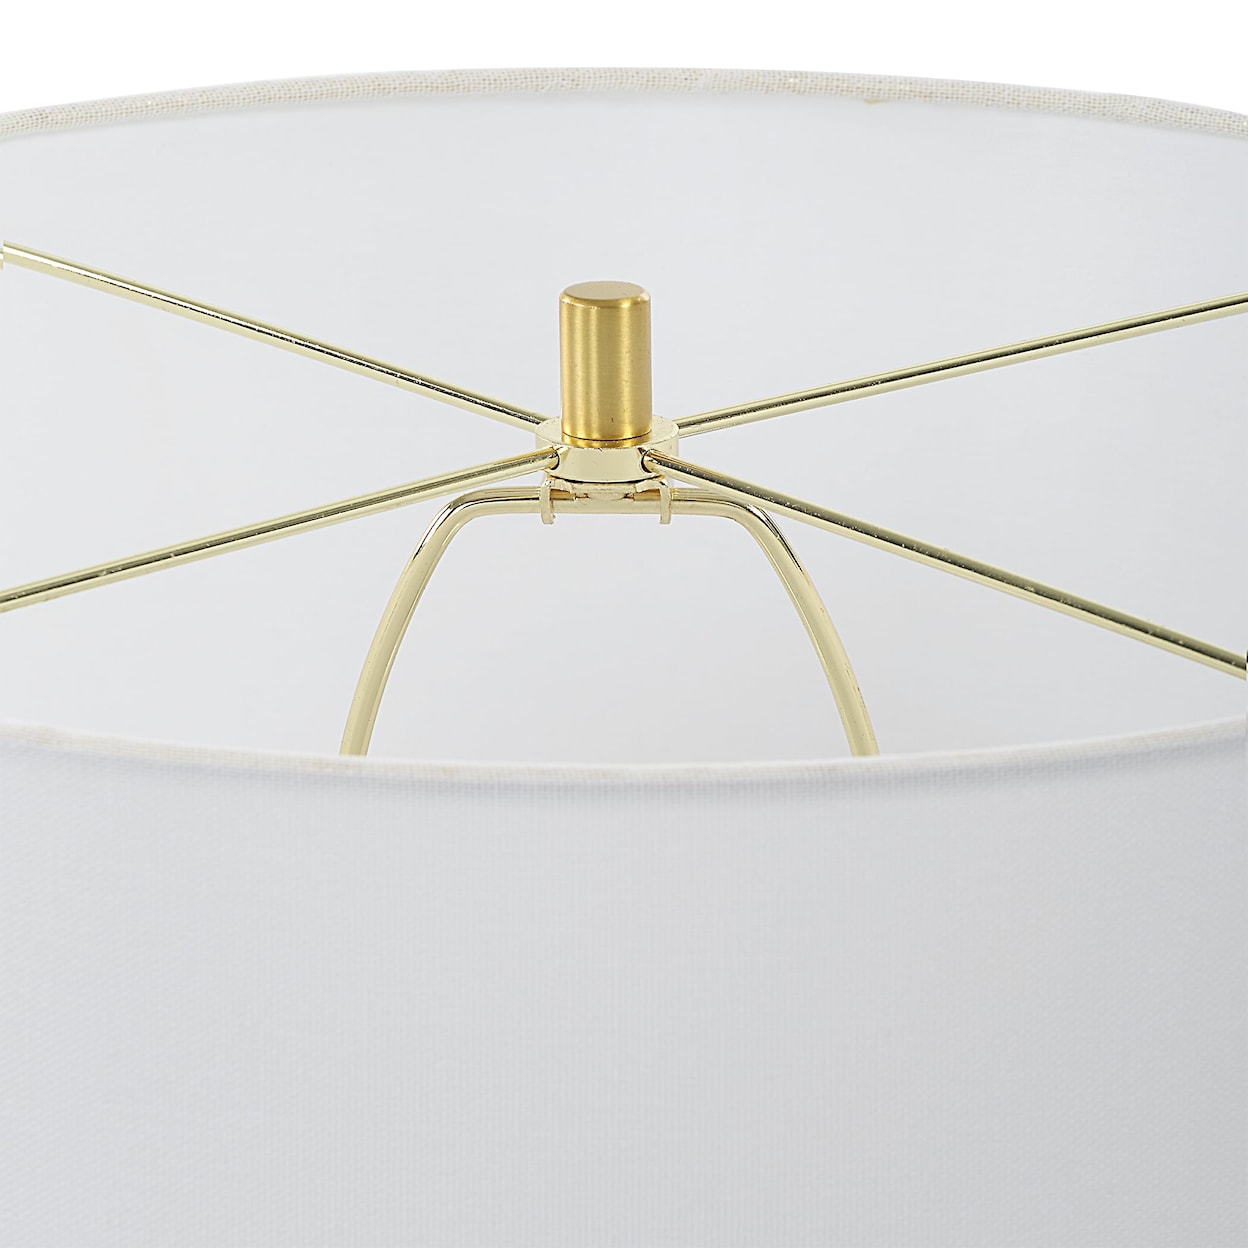 Uttermost Emerie Emerie Textured White Table Lamp